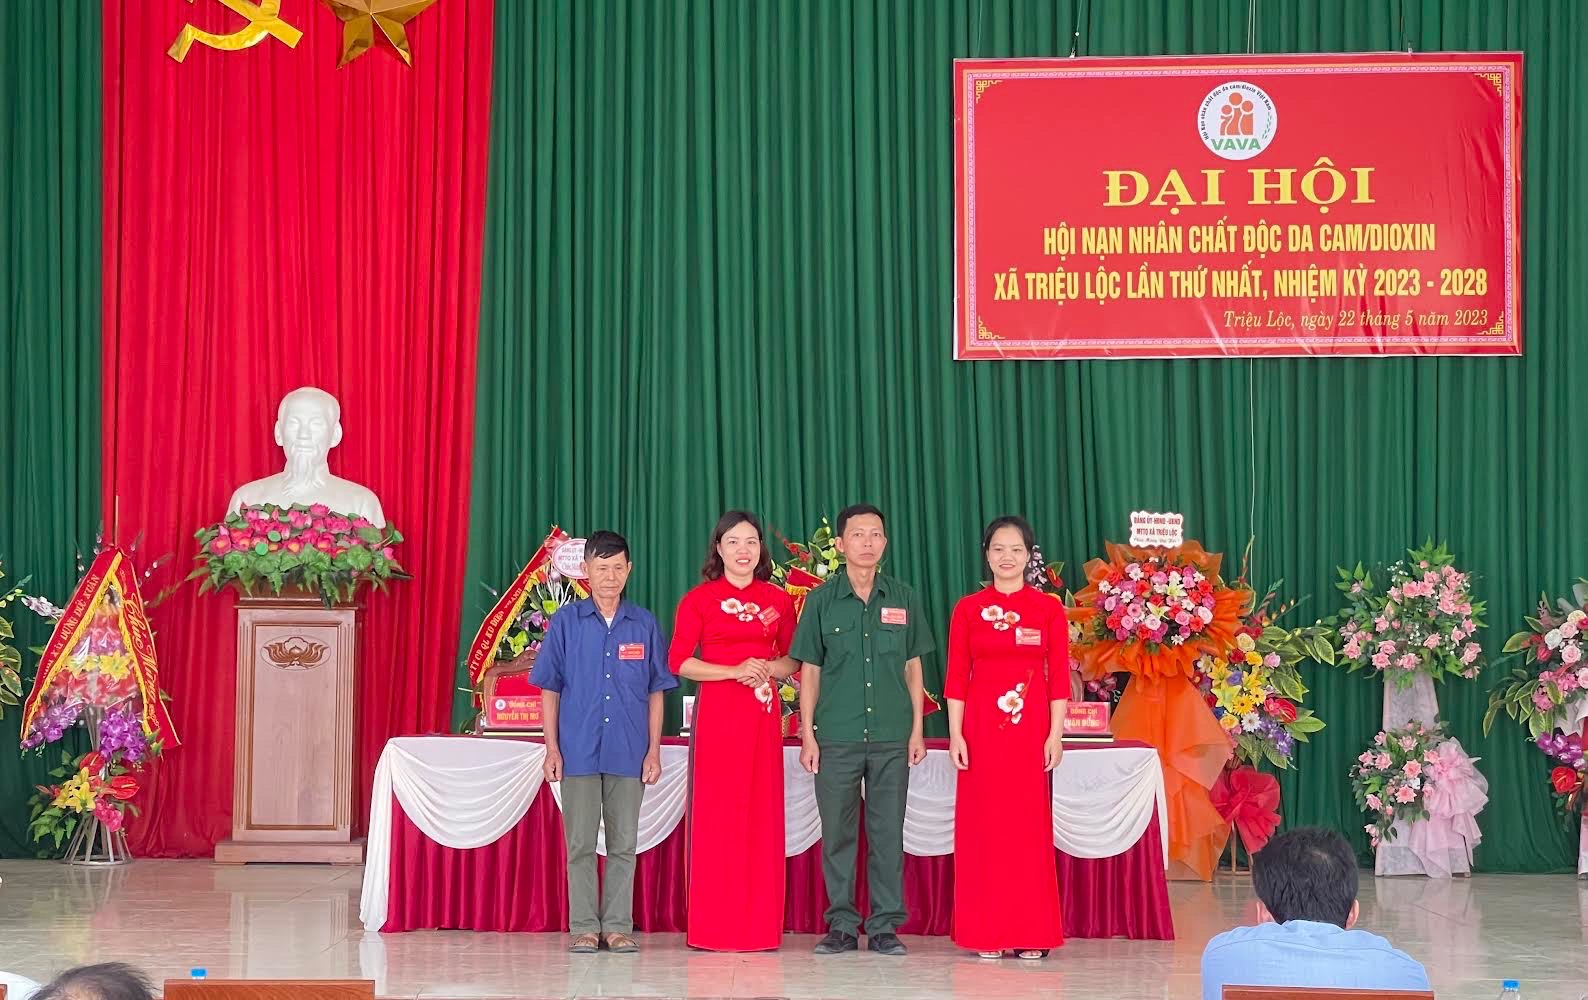 Hội nạn nhân chất độc da cam/Dioxin xã Triệu Lộc tổ chức Đại hội nhiệm kỳ 2023 - 2028